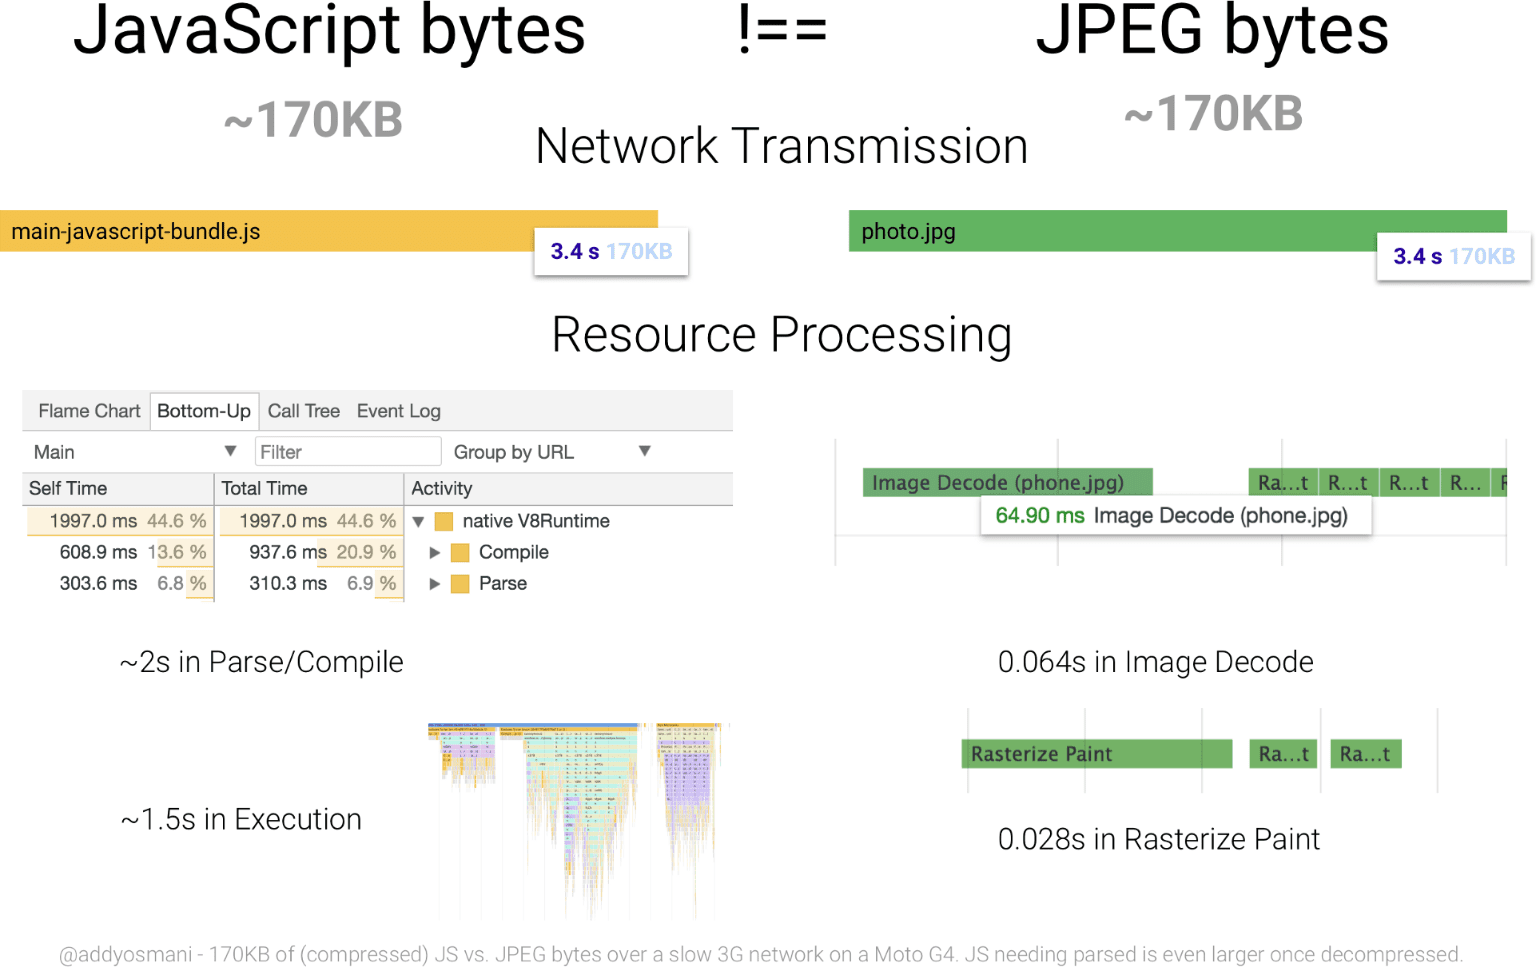 자바스크립트의 170KB 처리 시간을 동일한 크기의 JPEG 이미지와 비교한 다이어그램. JavaScript 리소스는 JPEG보다 바이트당 훨씬 리소스 집약적인 바이트입니다.